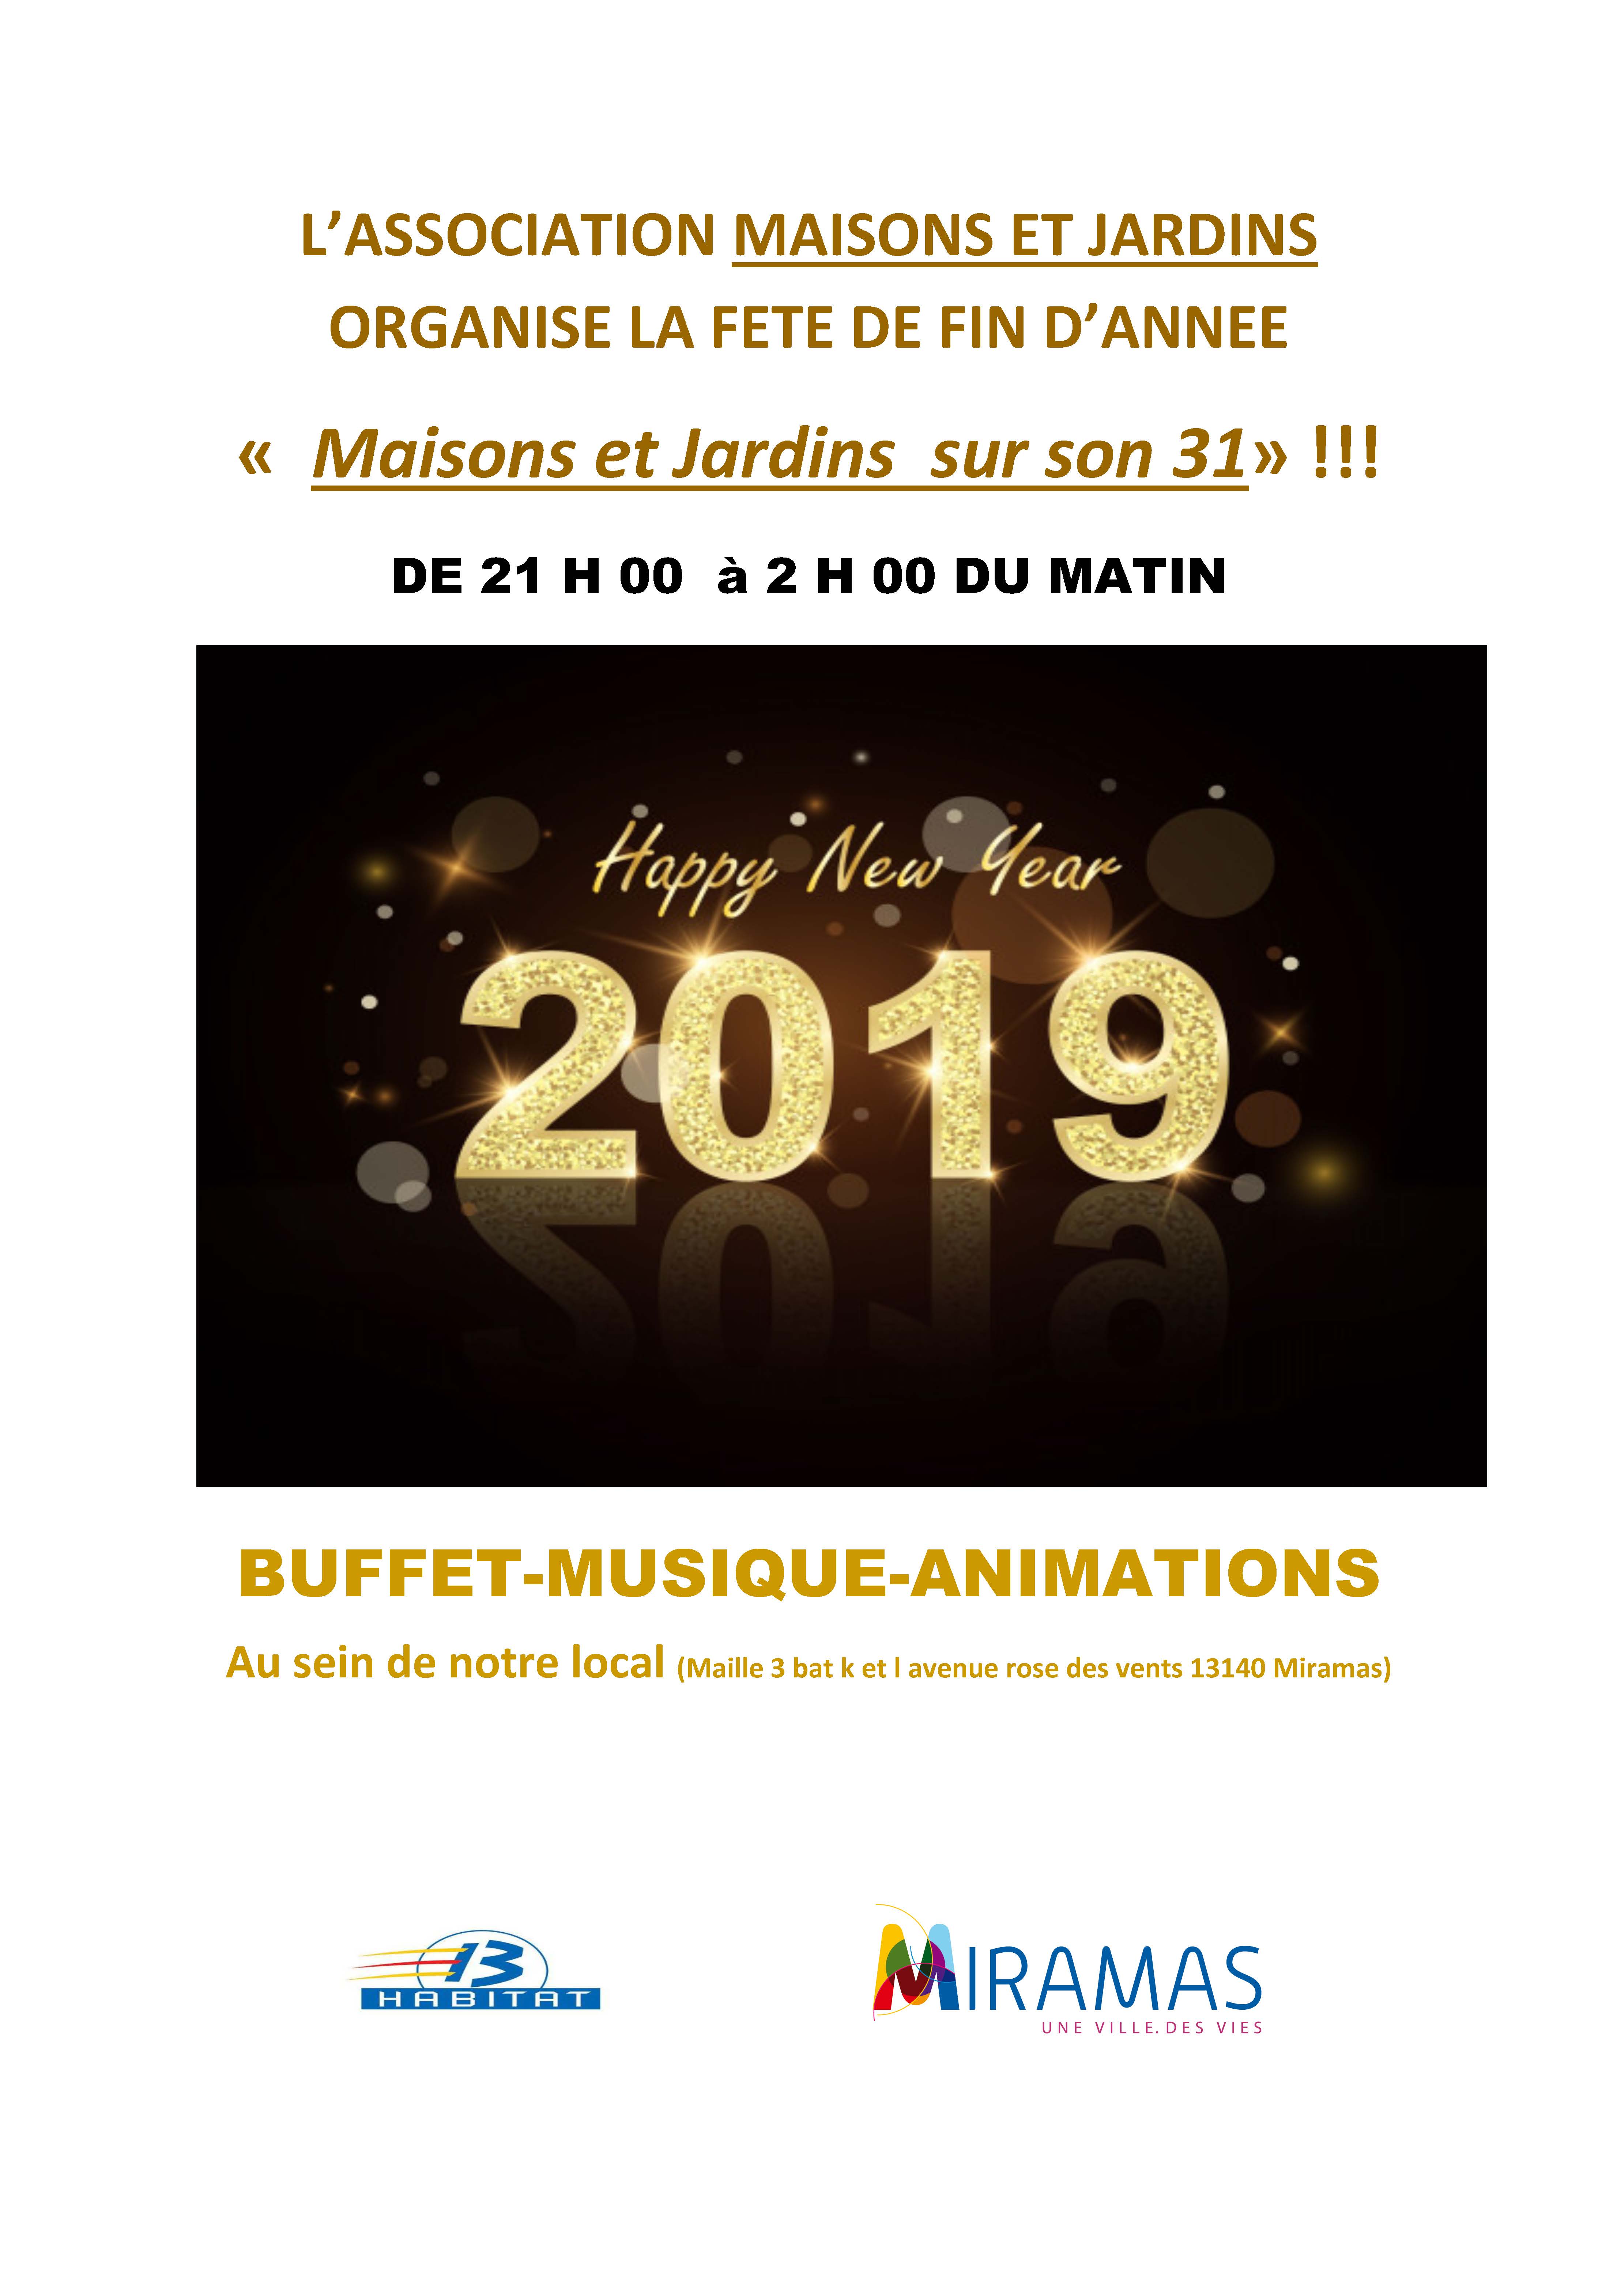 Buffet musical et animations de l'association Maisons et Jardins le 31 décembre à Miramas - La Maille 3